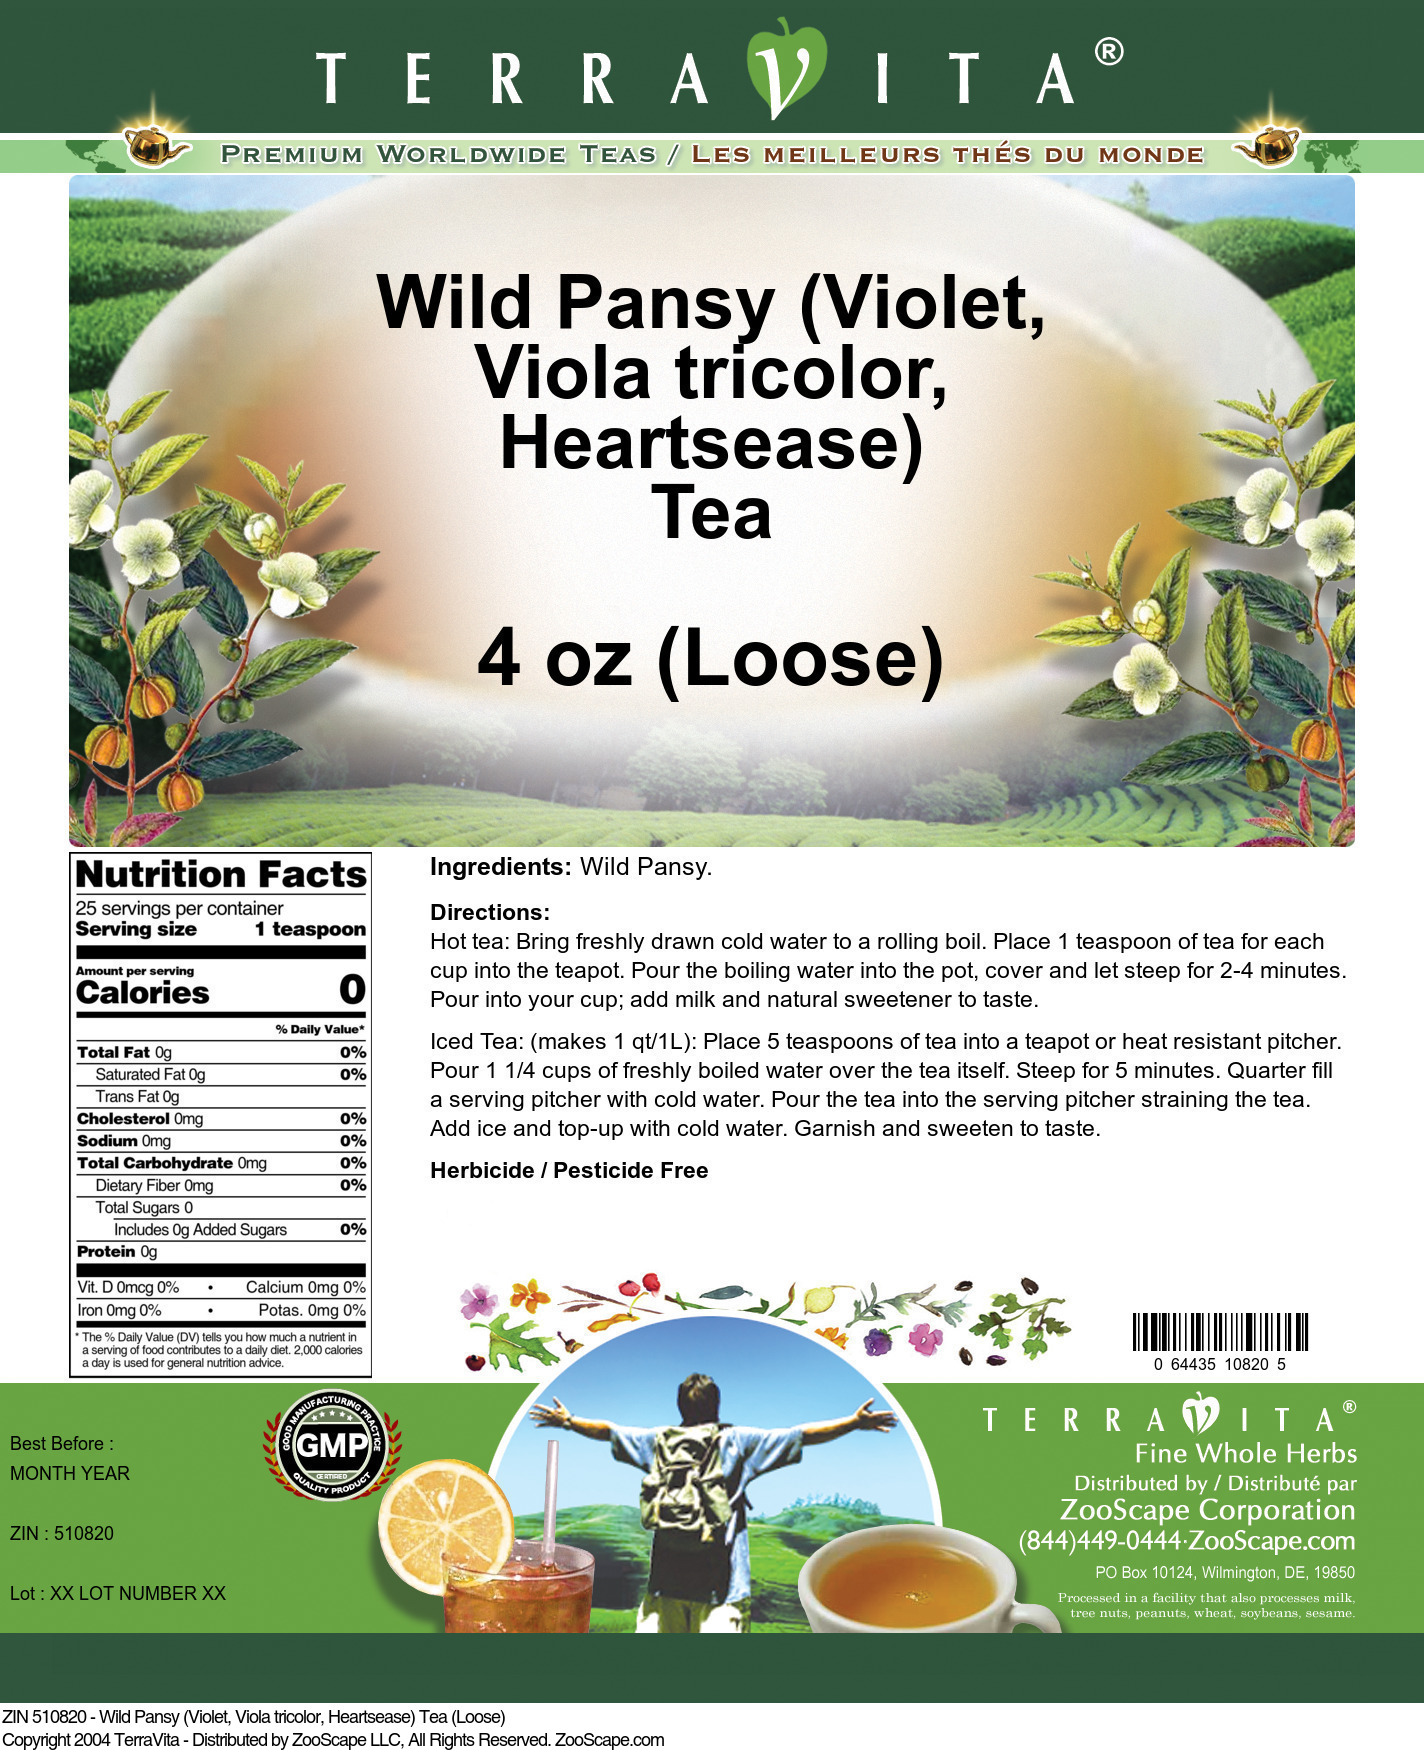 Wild Pansy (Violet, Viola tricolor, Heartsease) Tea (Loose) - Label